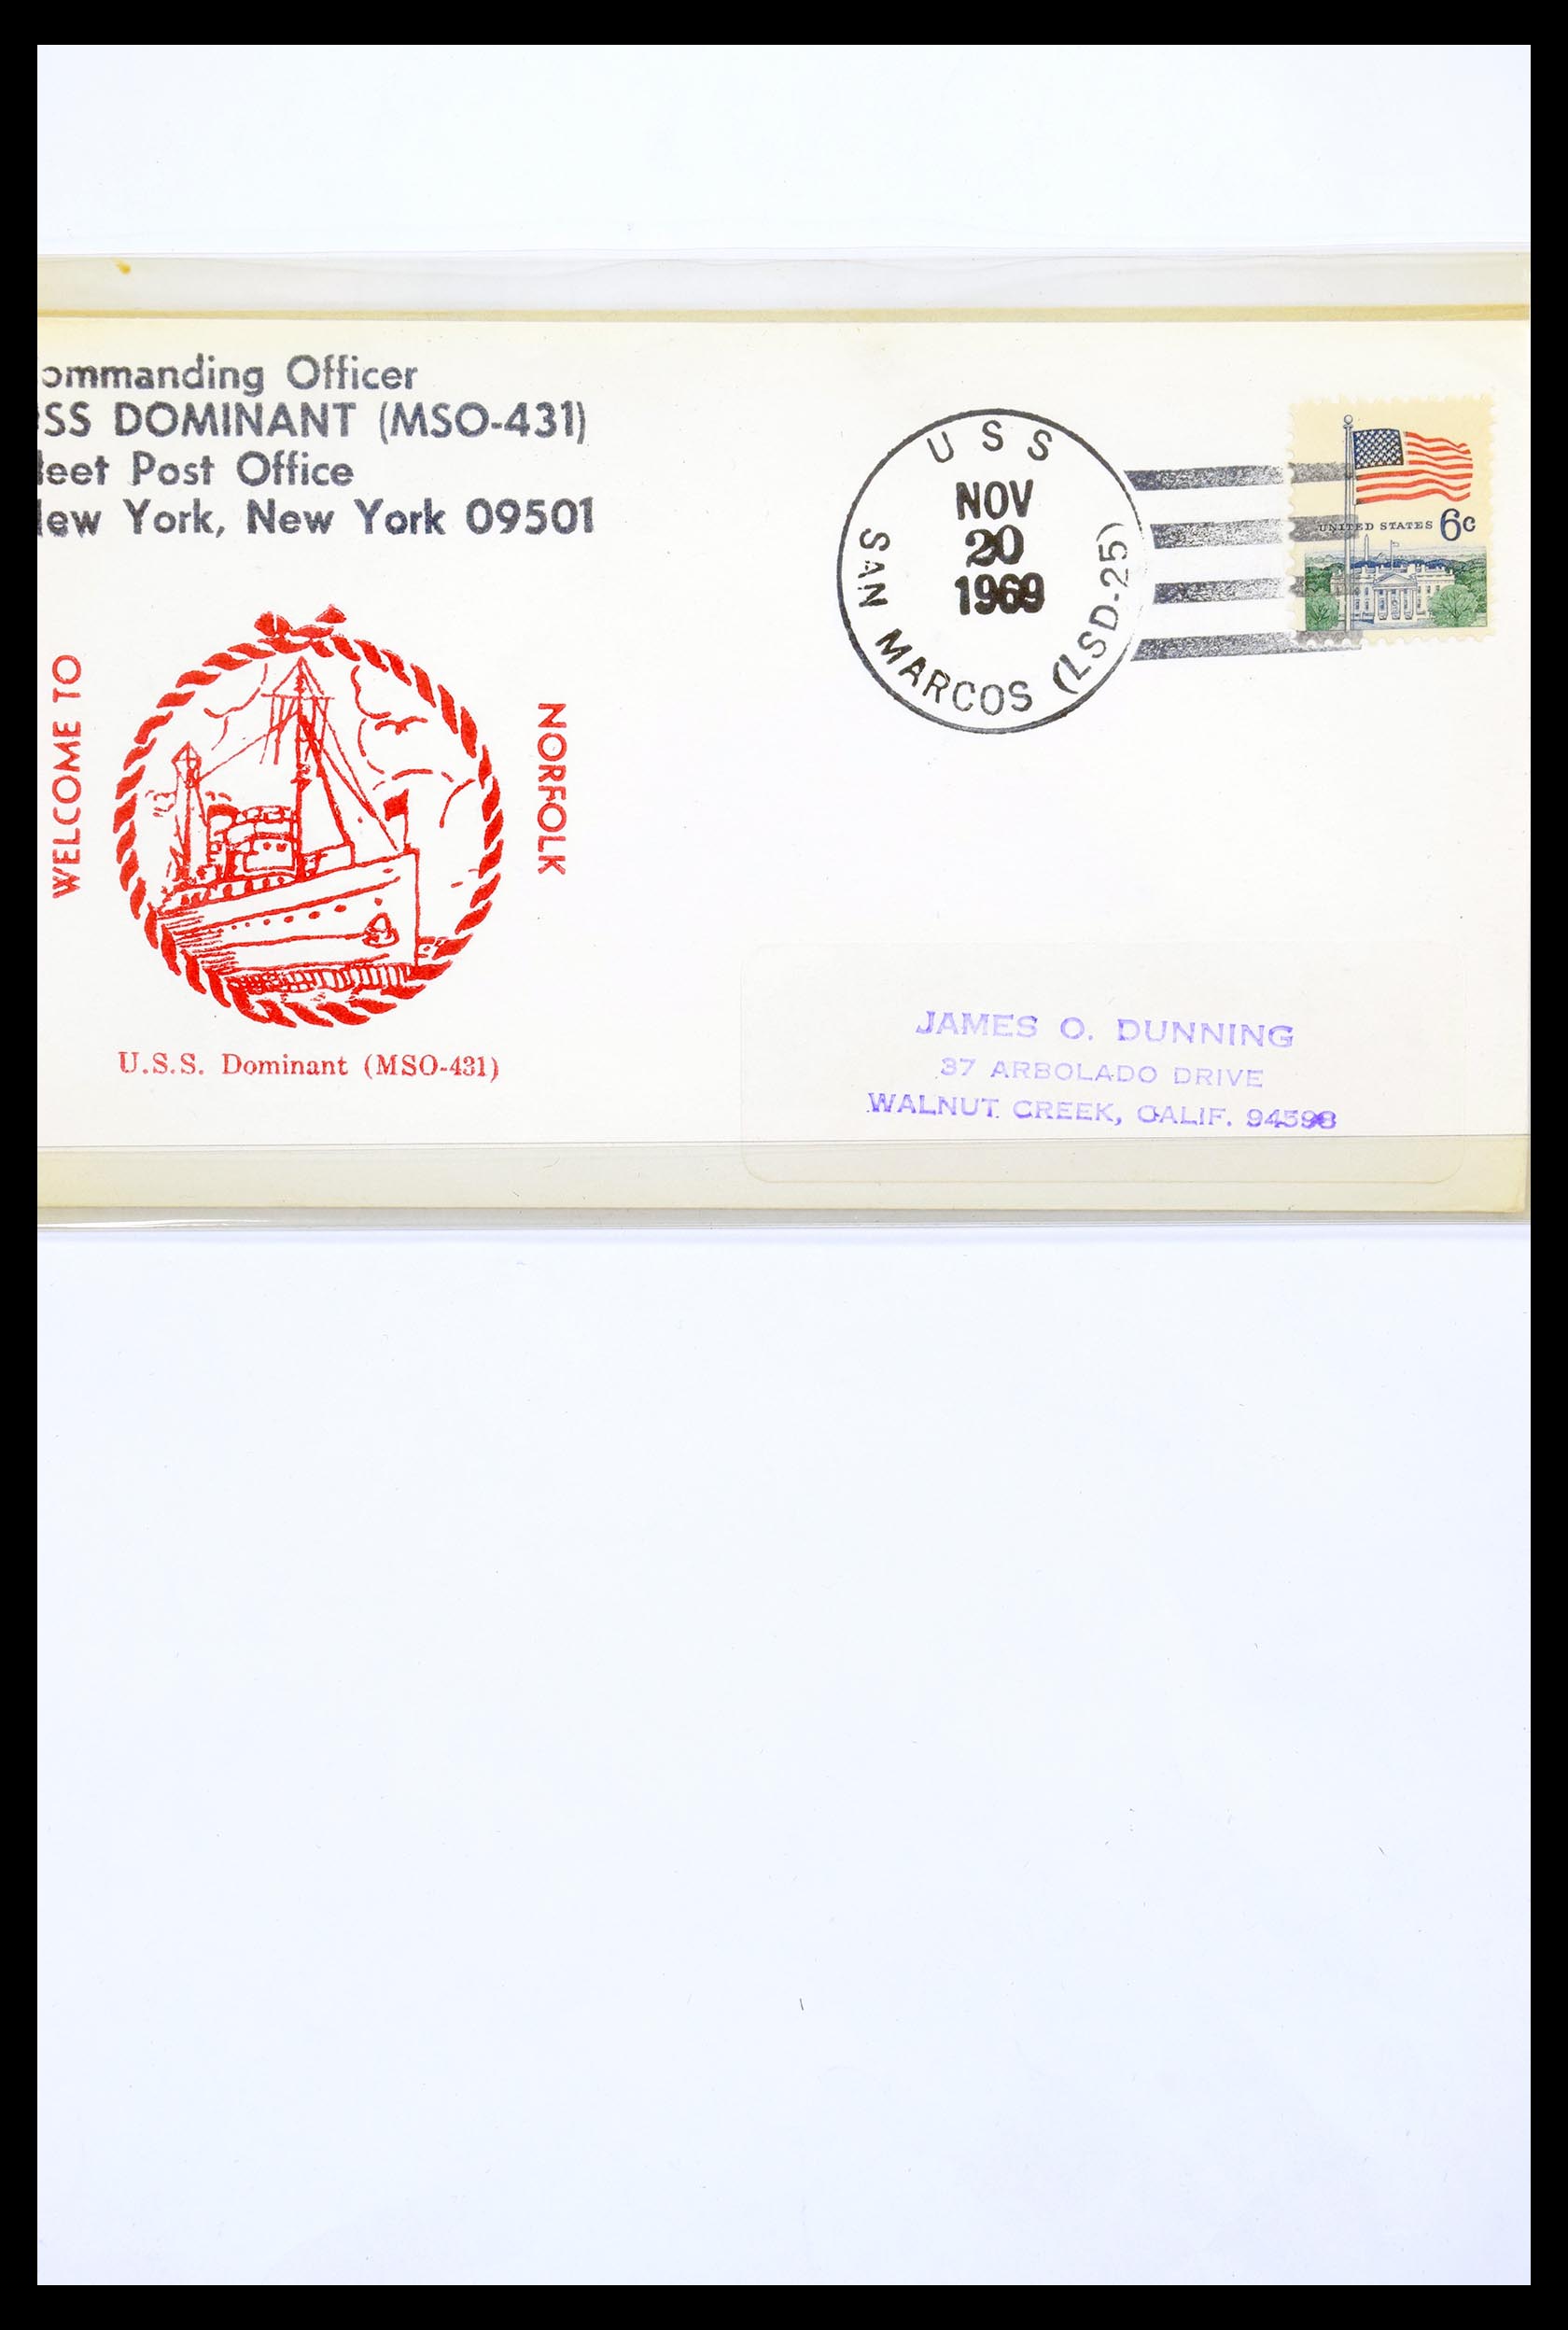 30341 292 - 30341 USA scheepspost brieven 1930-1970.